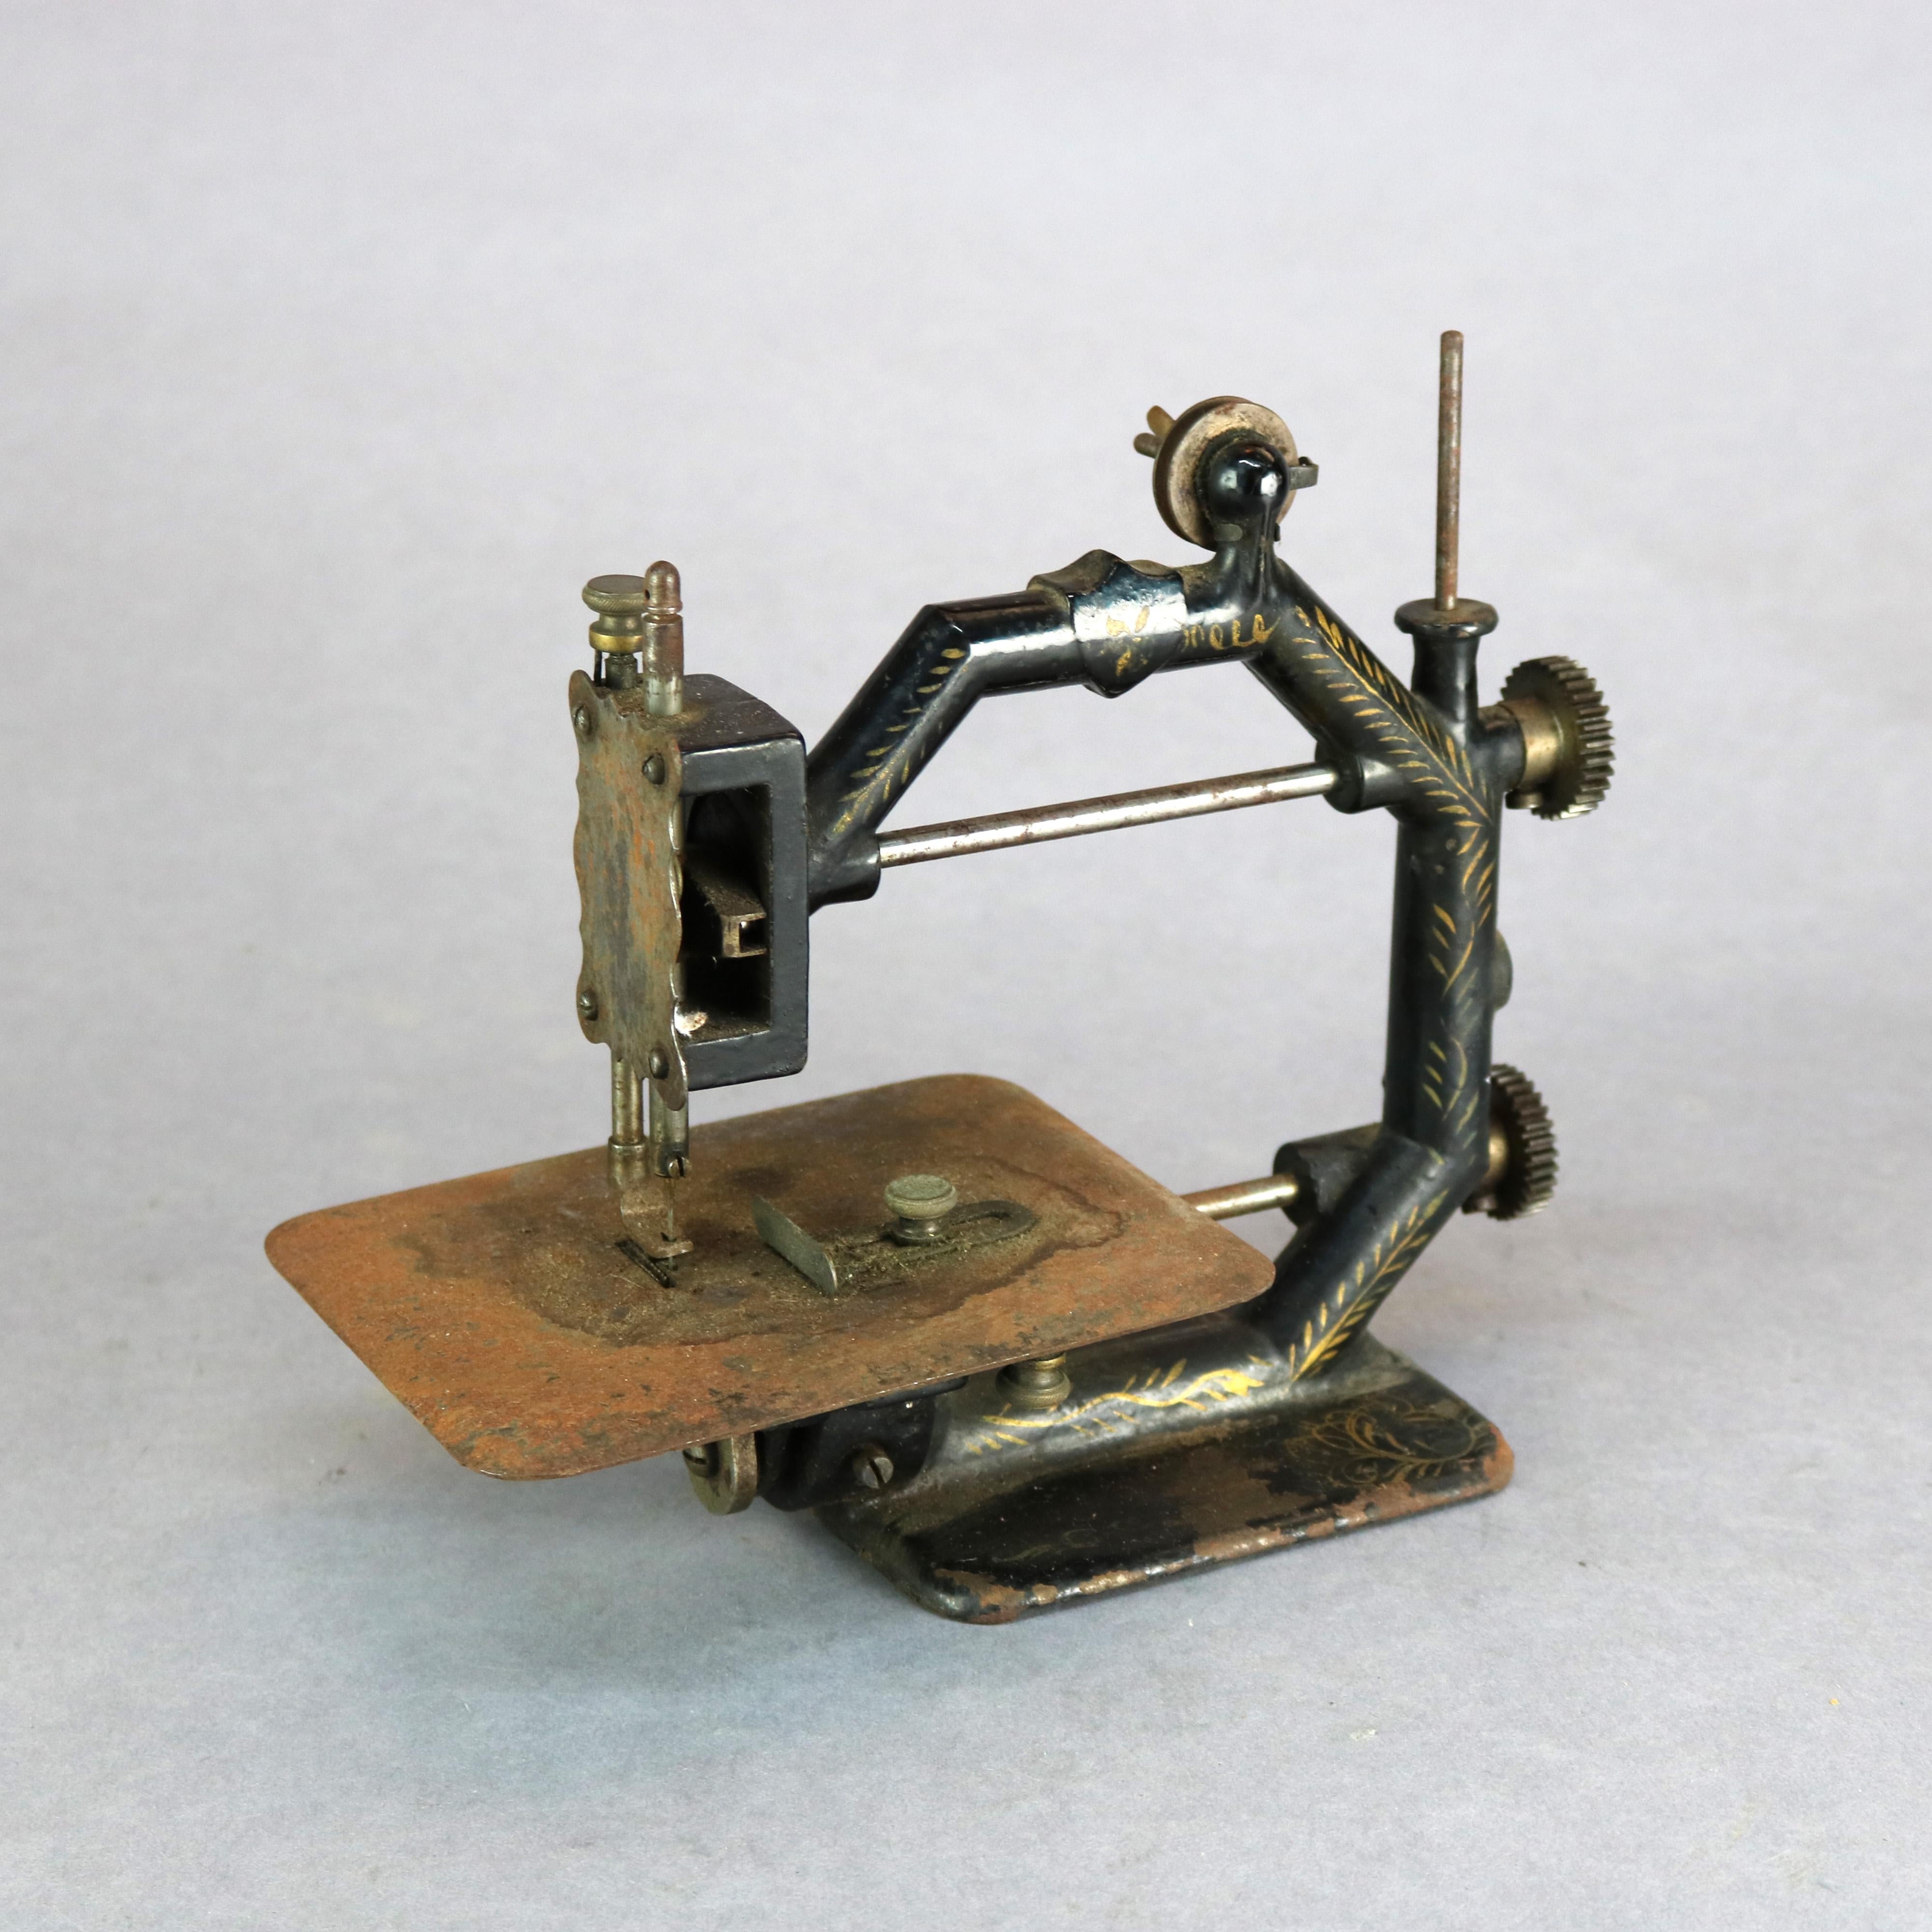 1850 singer sewing machine